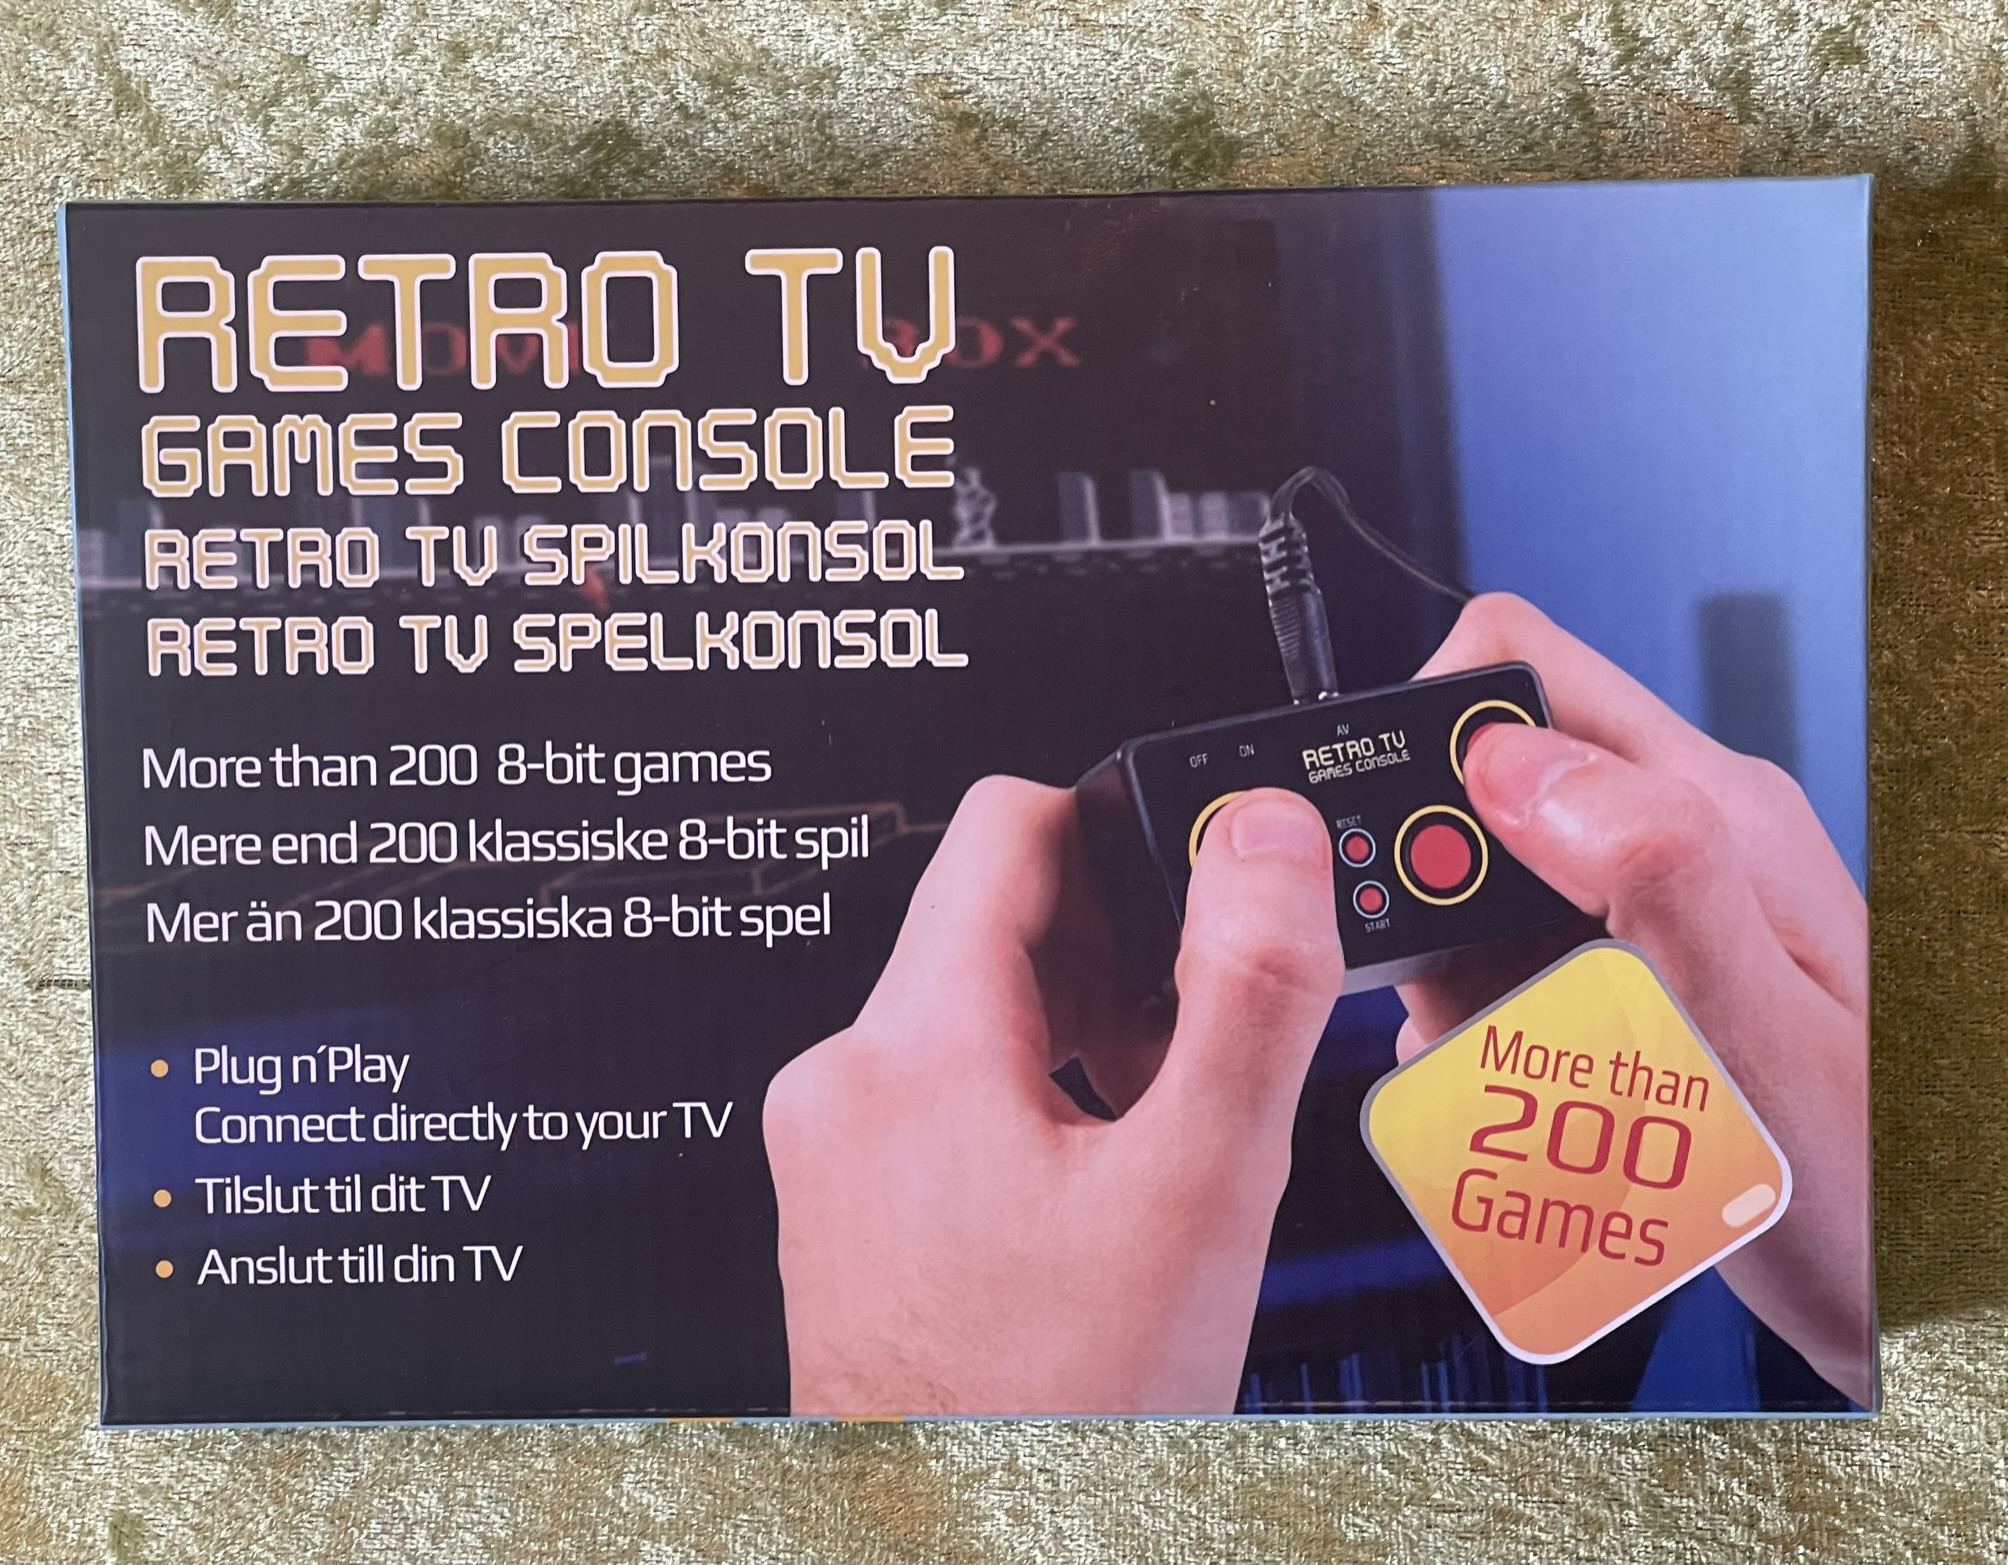 Retro Tv Games Console